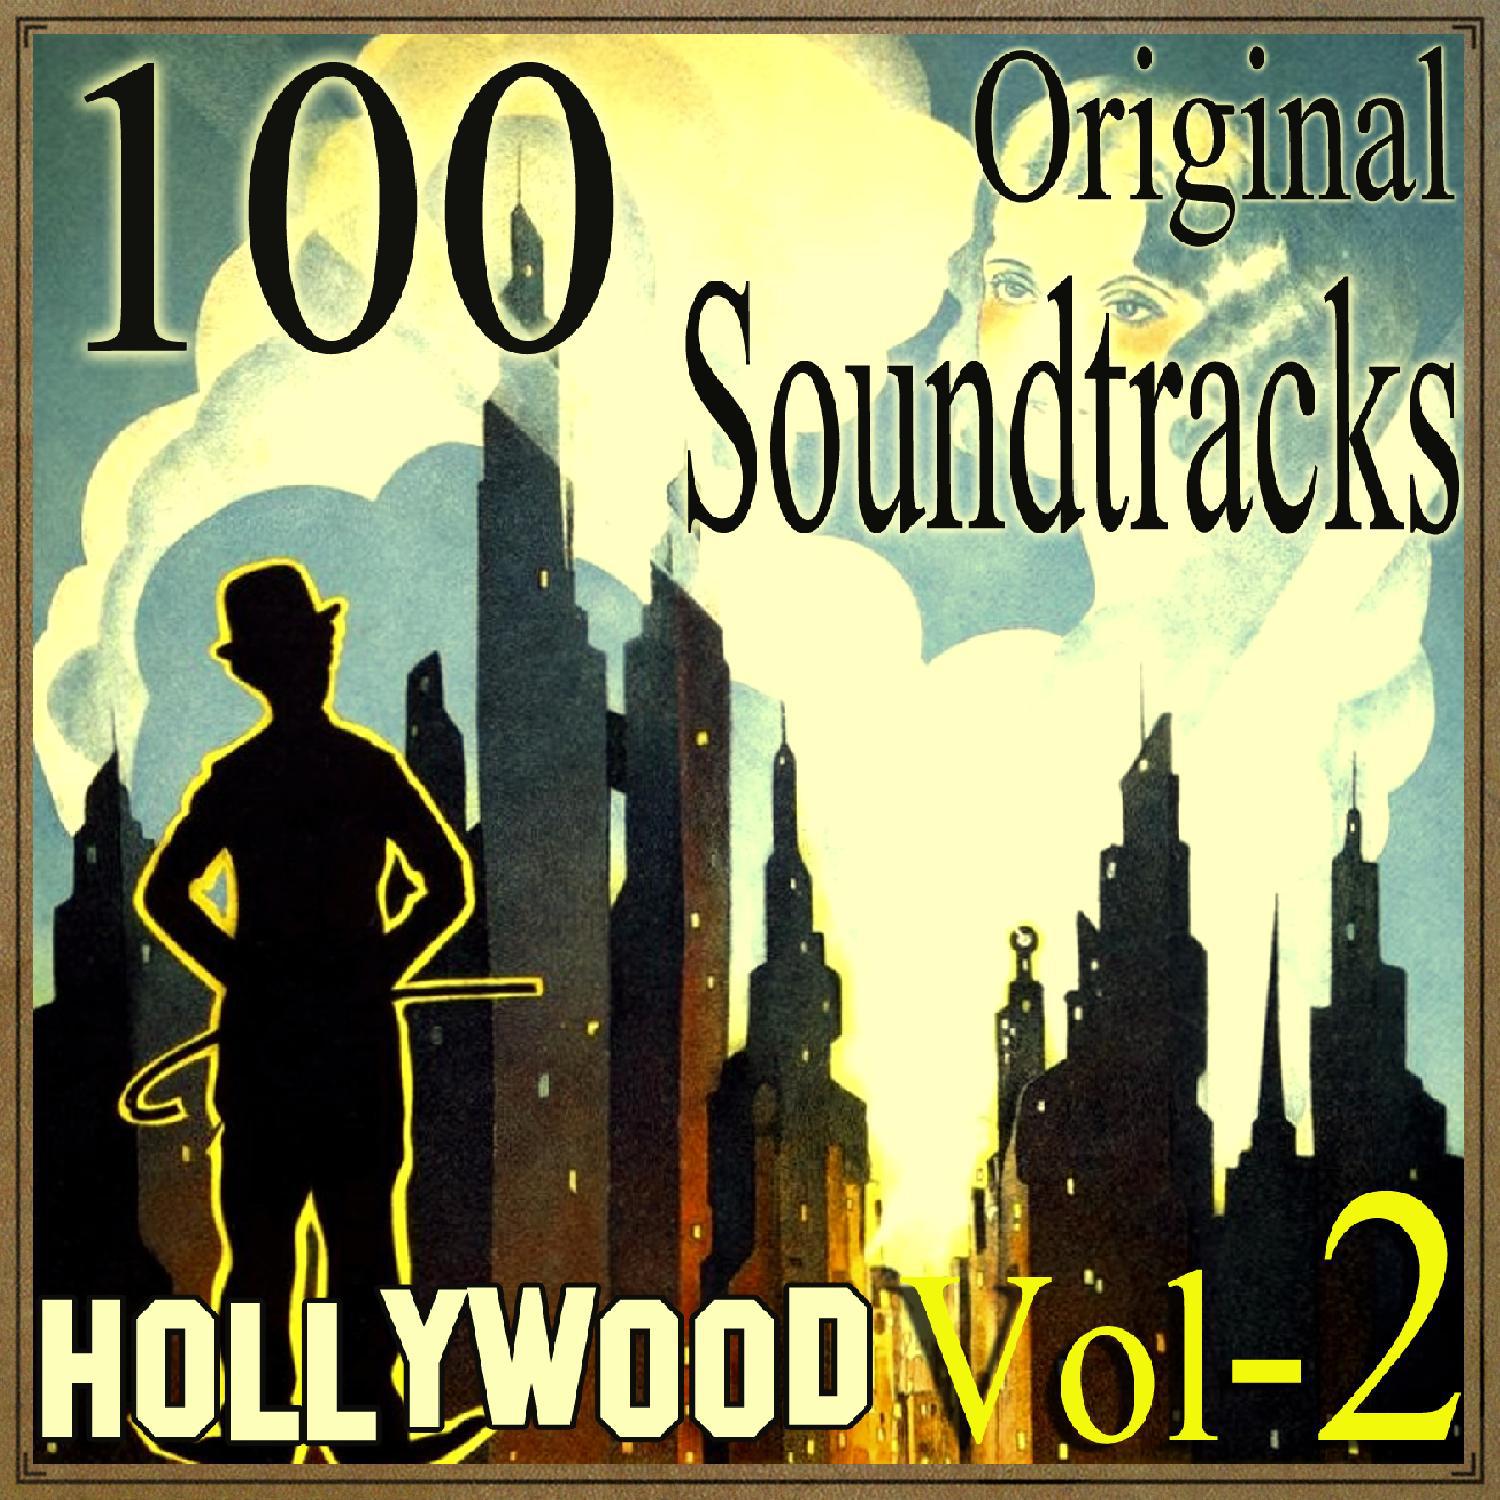 100 Original Soundtracks, Hollywood Vol 2